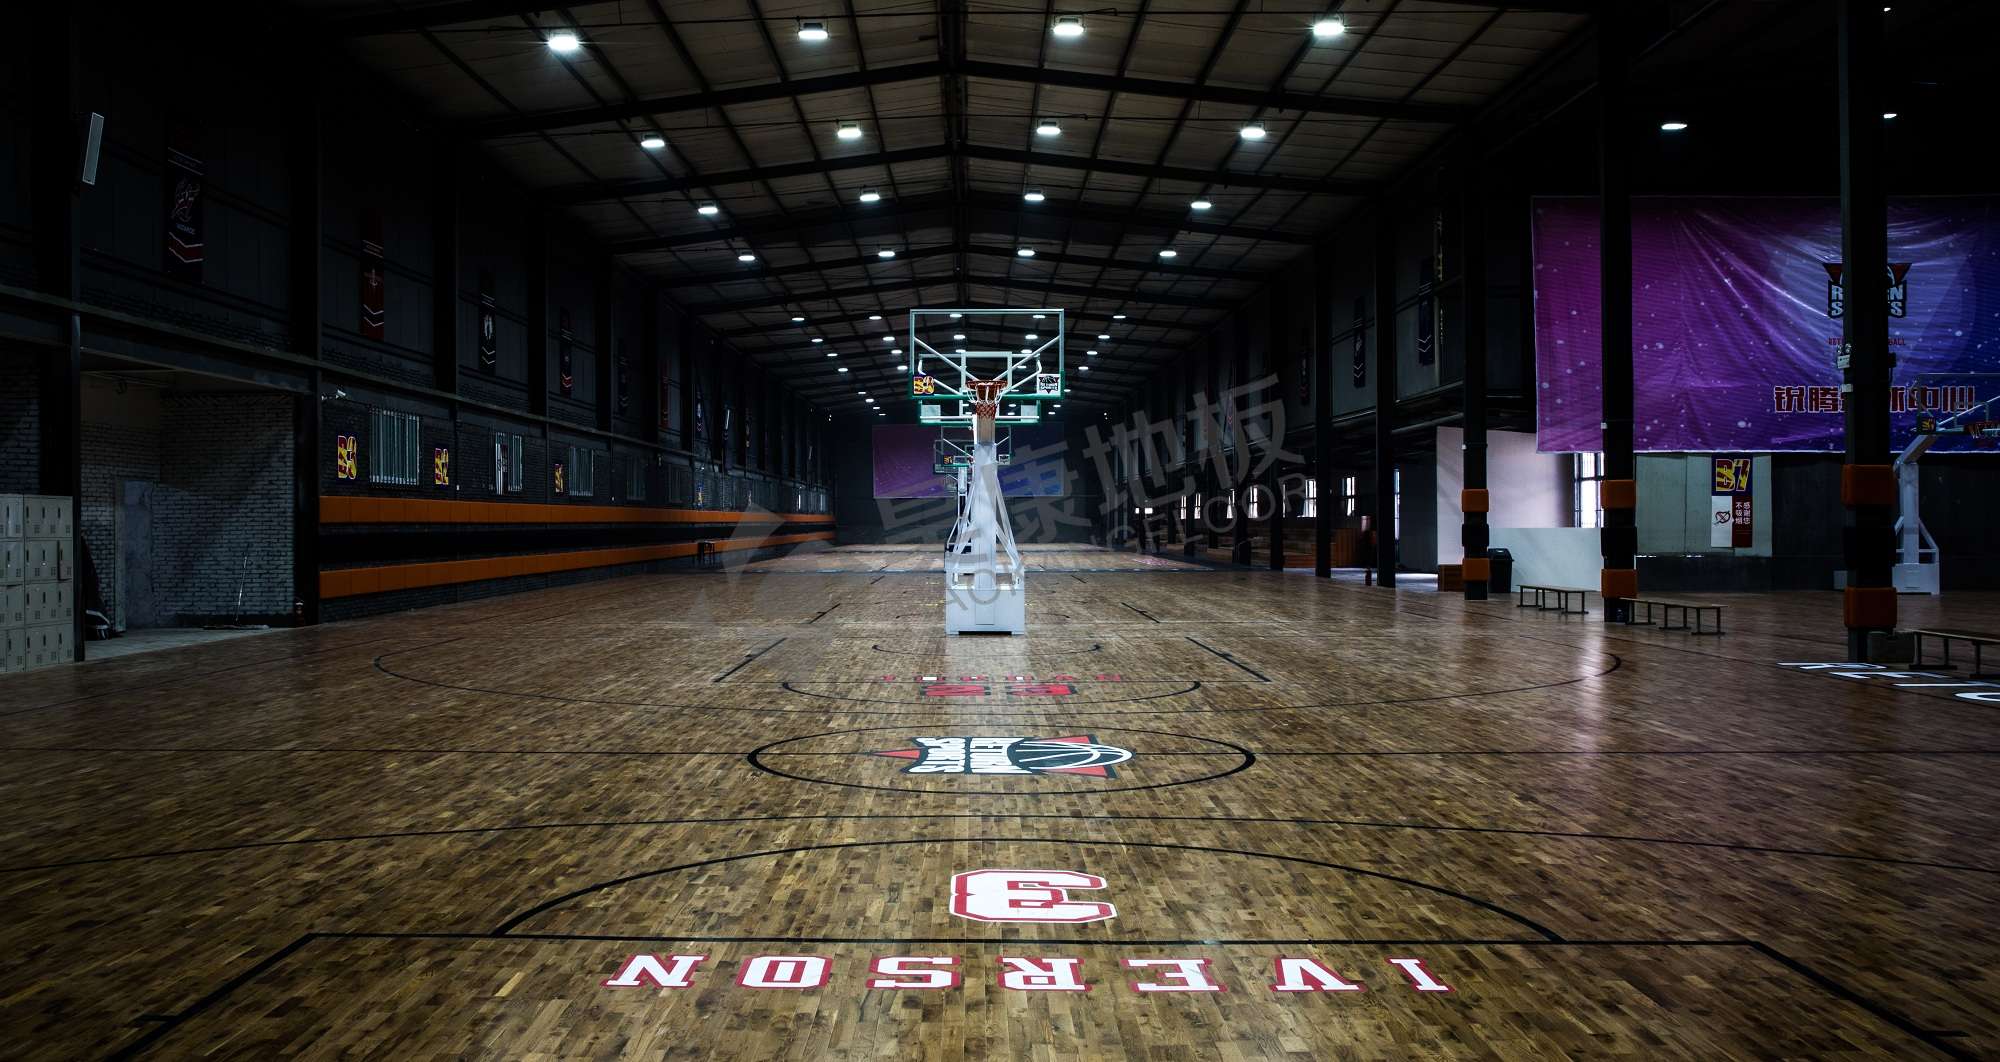 Ruiteng Basketball Center, Xi'an.jpg